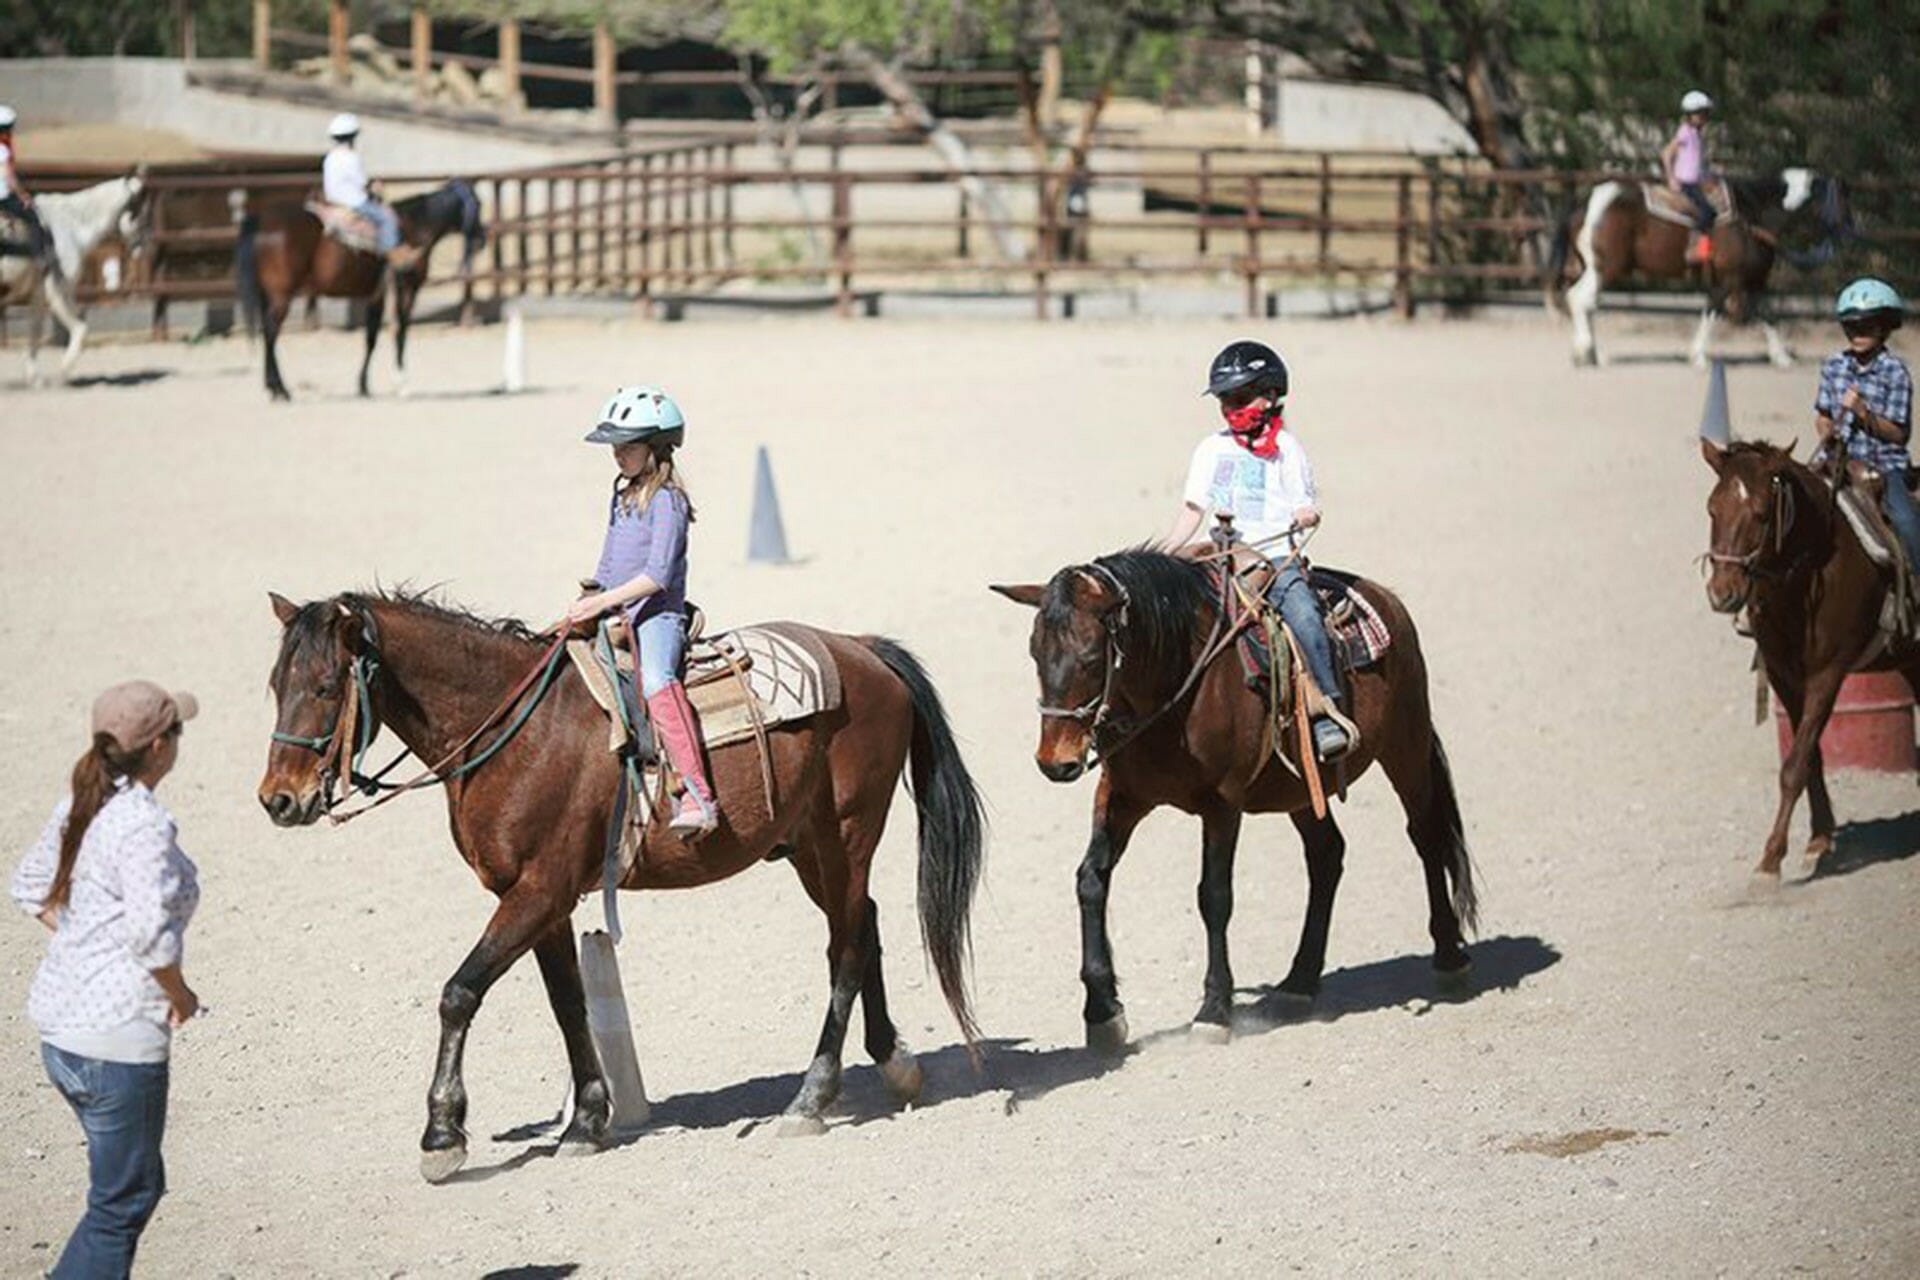 kids riding horses